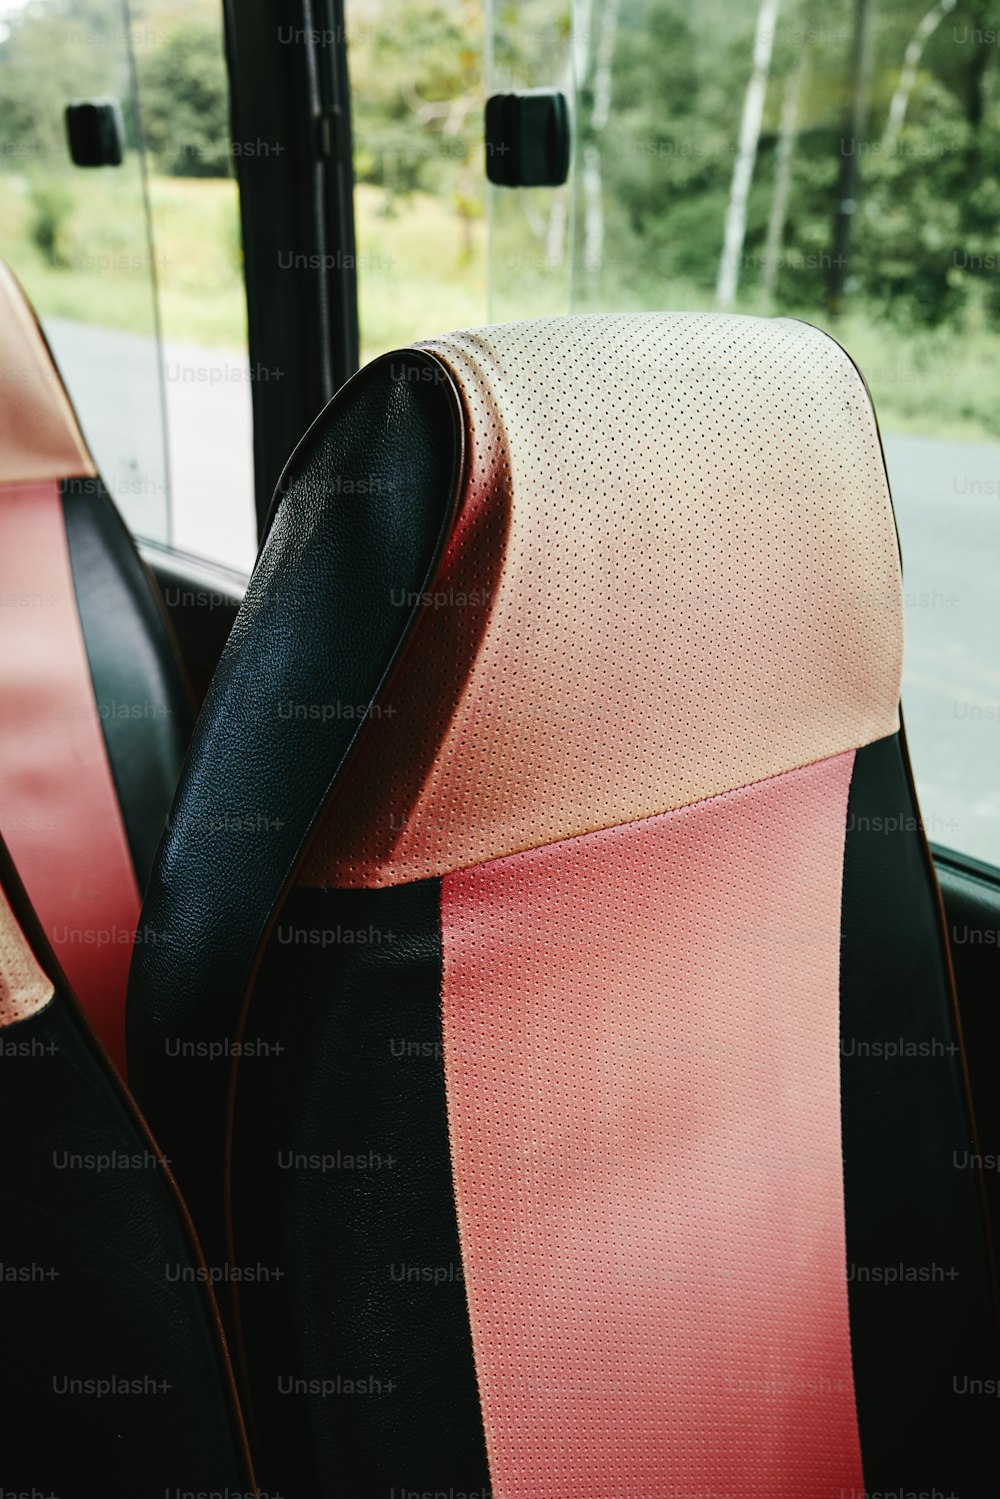 Les sièges dans le bus sont rouges et noirs